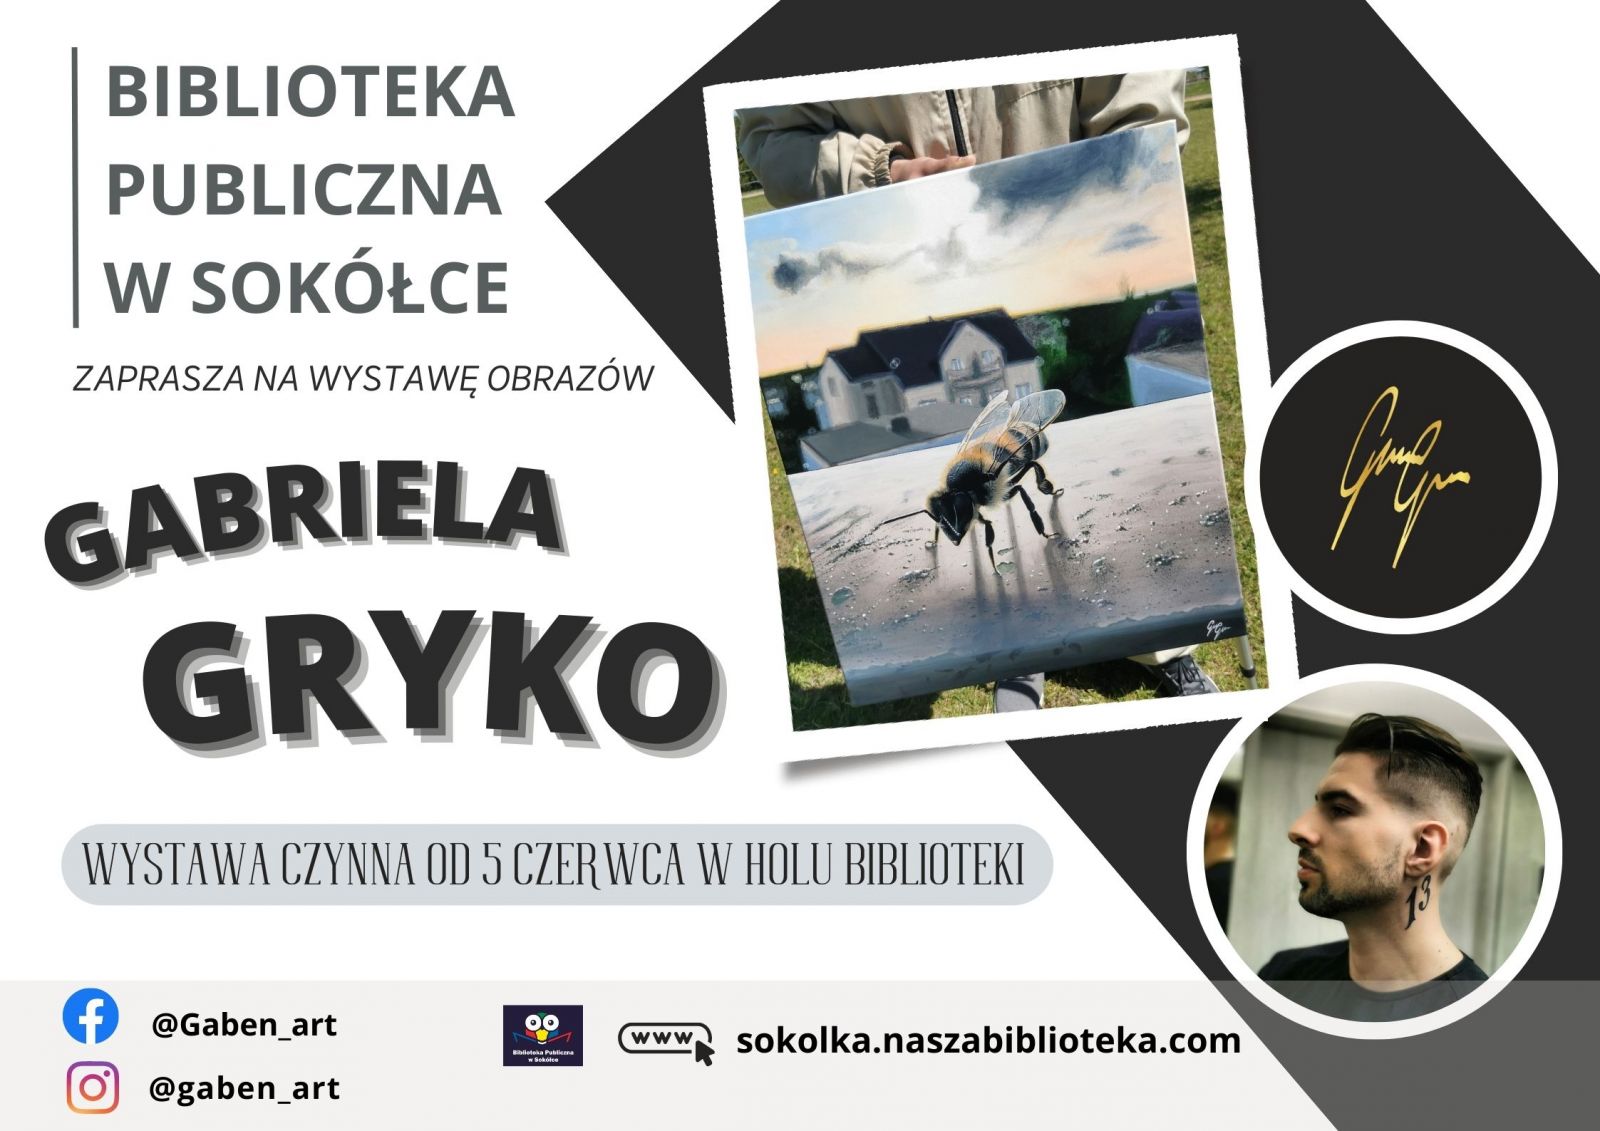 Plakat promujący wystawę obrazów Gabriela Gryko